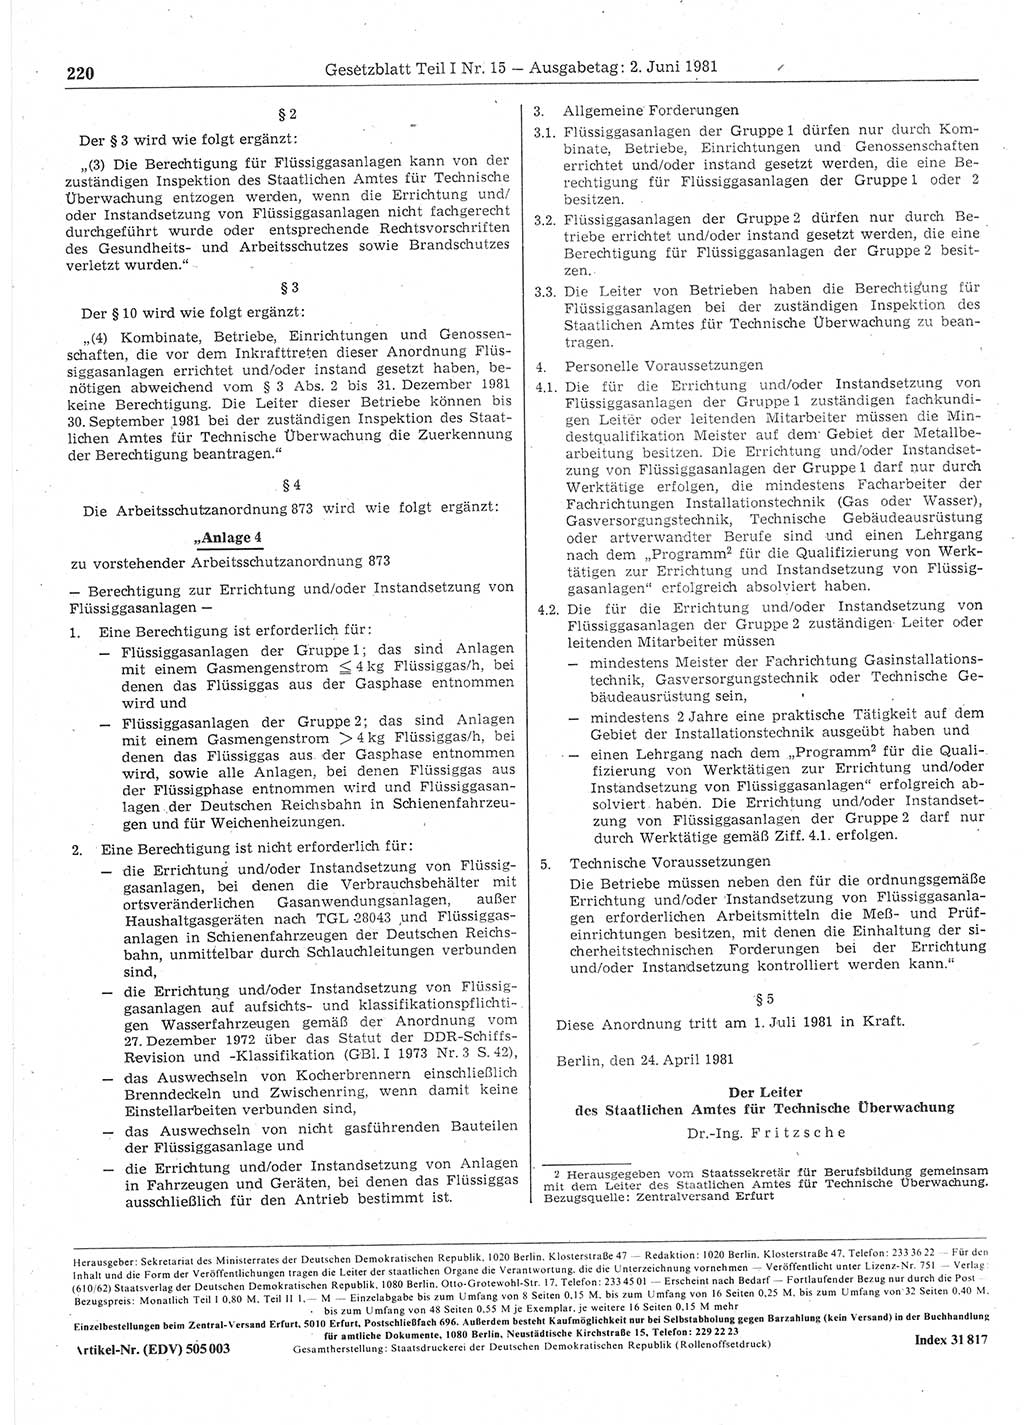 Gesetzblatt (GBl.) der Deutschen Demokratischen Republik (DDR) Teil Ⅰ 1981, Seite 220 (GBl. DDR Ⅰ 1981, S. 220)